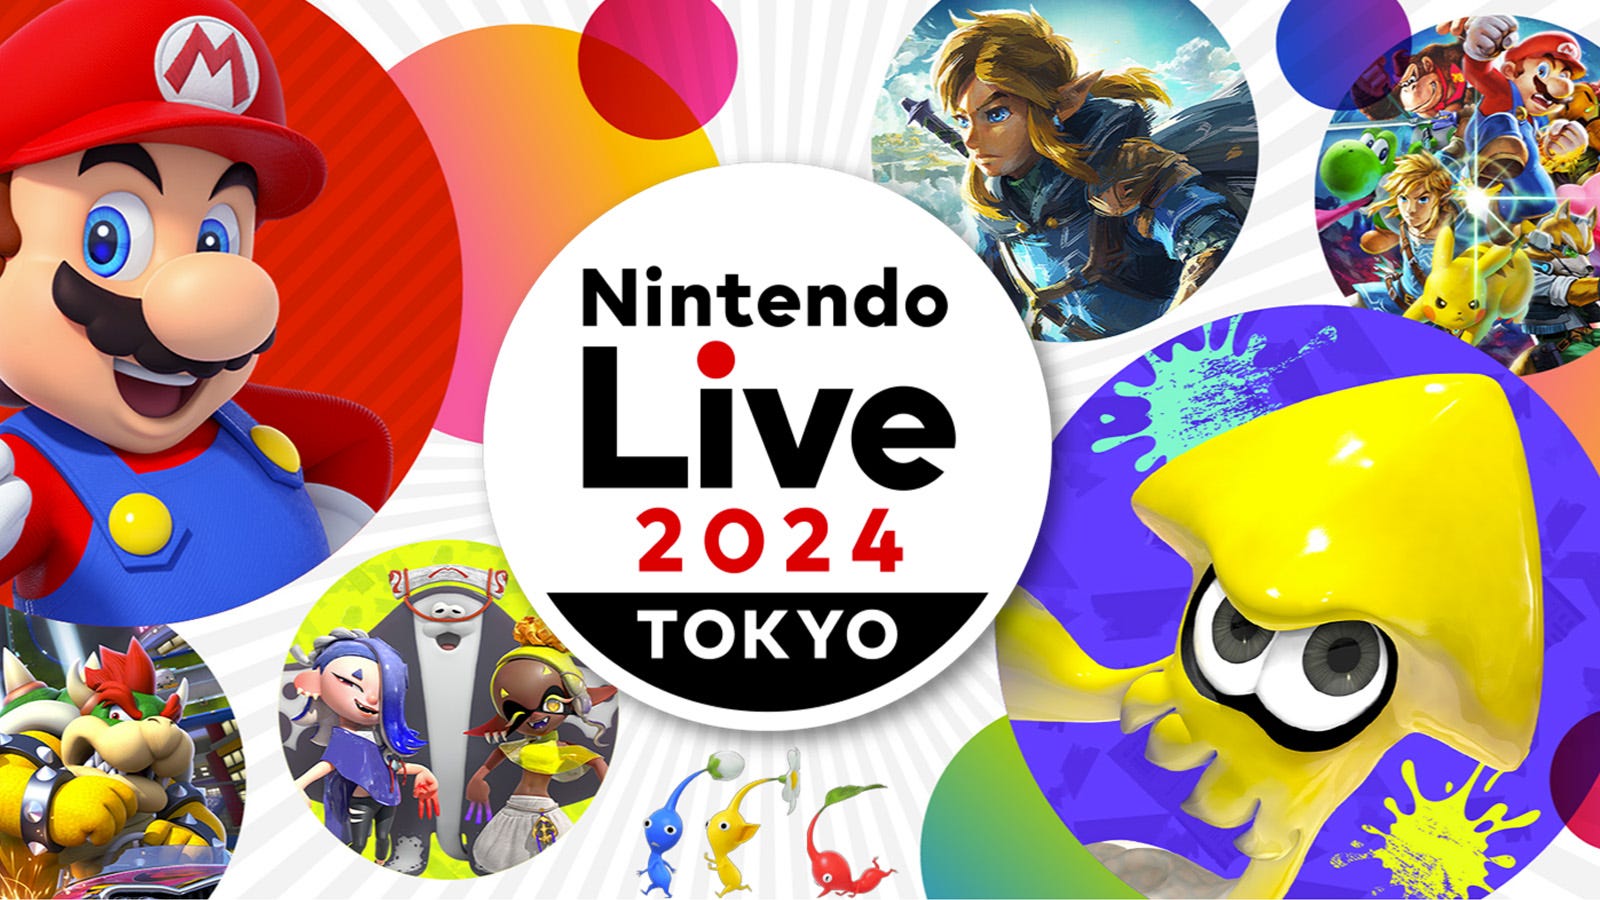 Nintendo Live 2024 Tokyo tədbiri işçilərə təhdidlərdən sonra ləğv edildi